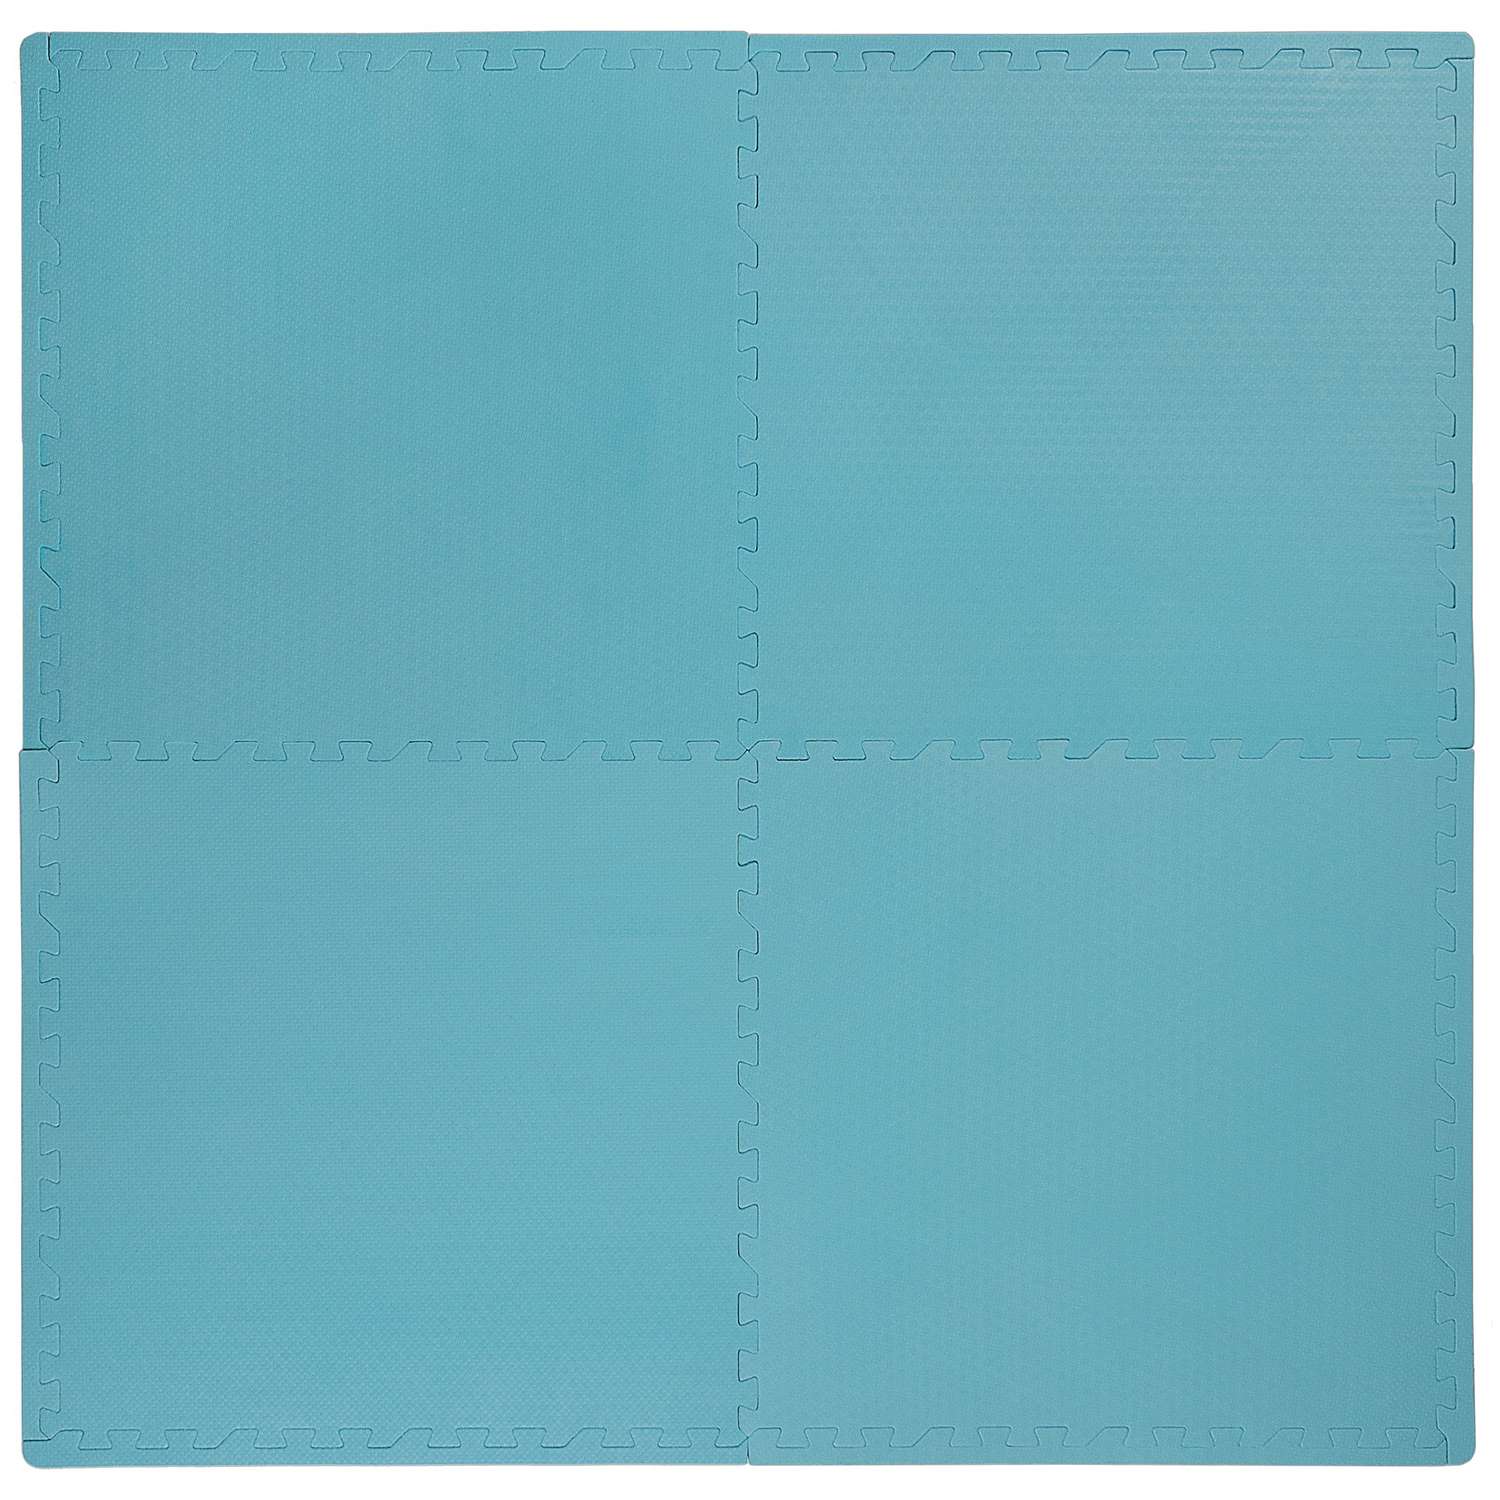 Развивающий детский коврик Eco cover игровой мягкий пол для ползания голубой 60х60 - фото 2